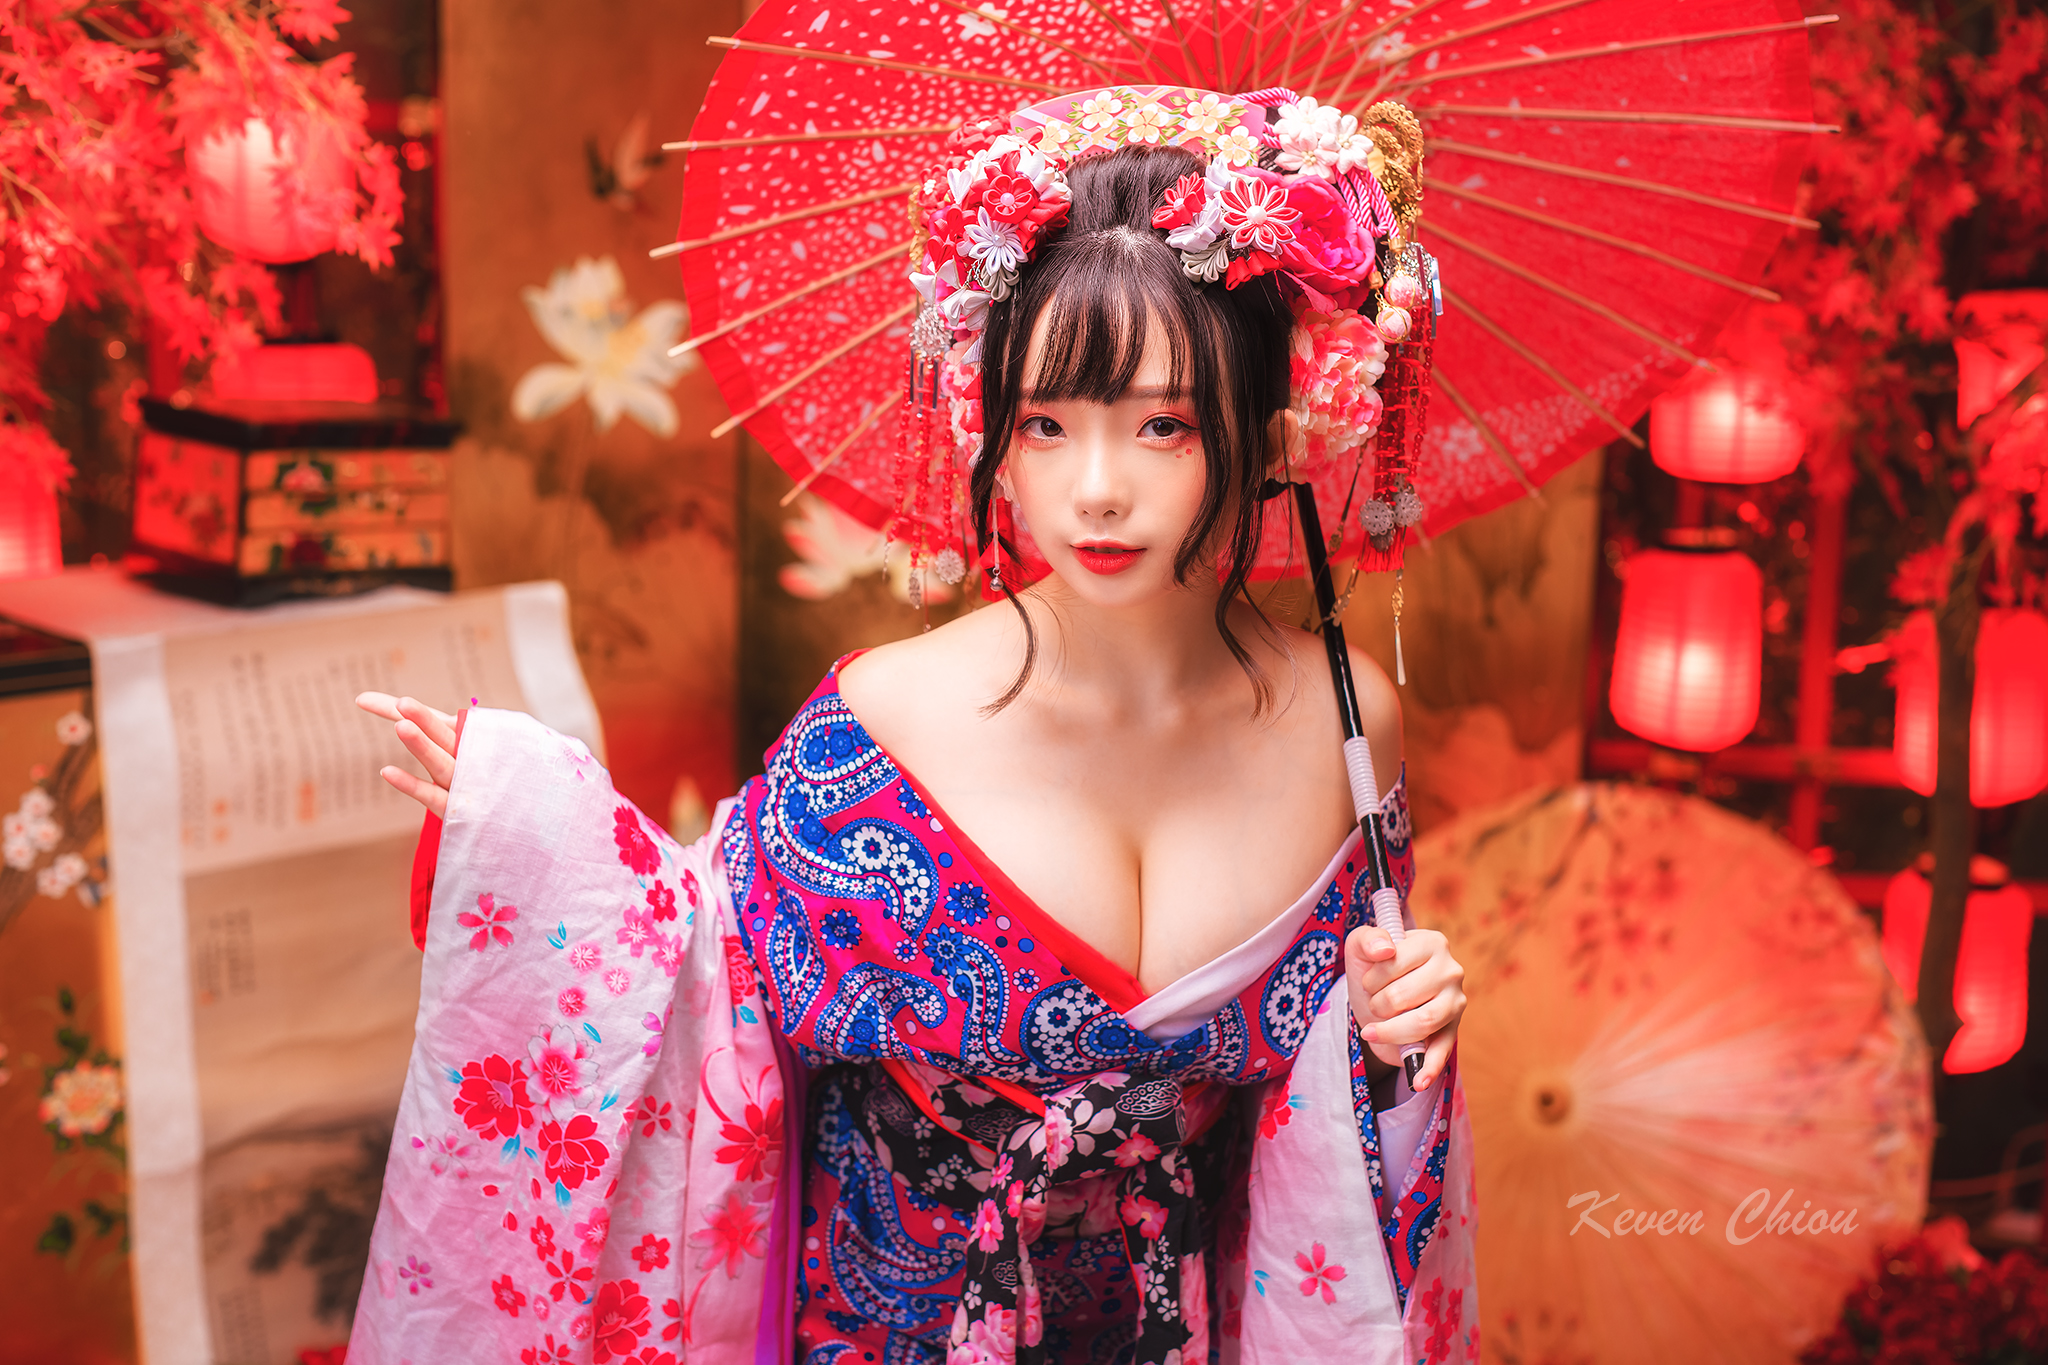 Ning Shioulin Women Model Asian Kimono Geisha Bare Shoulders Women Indoors 2048x1365